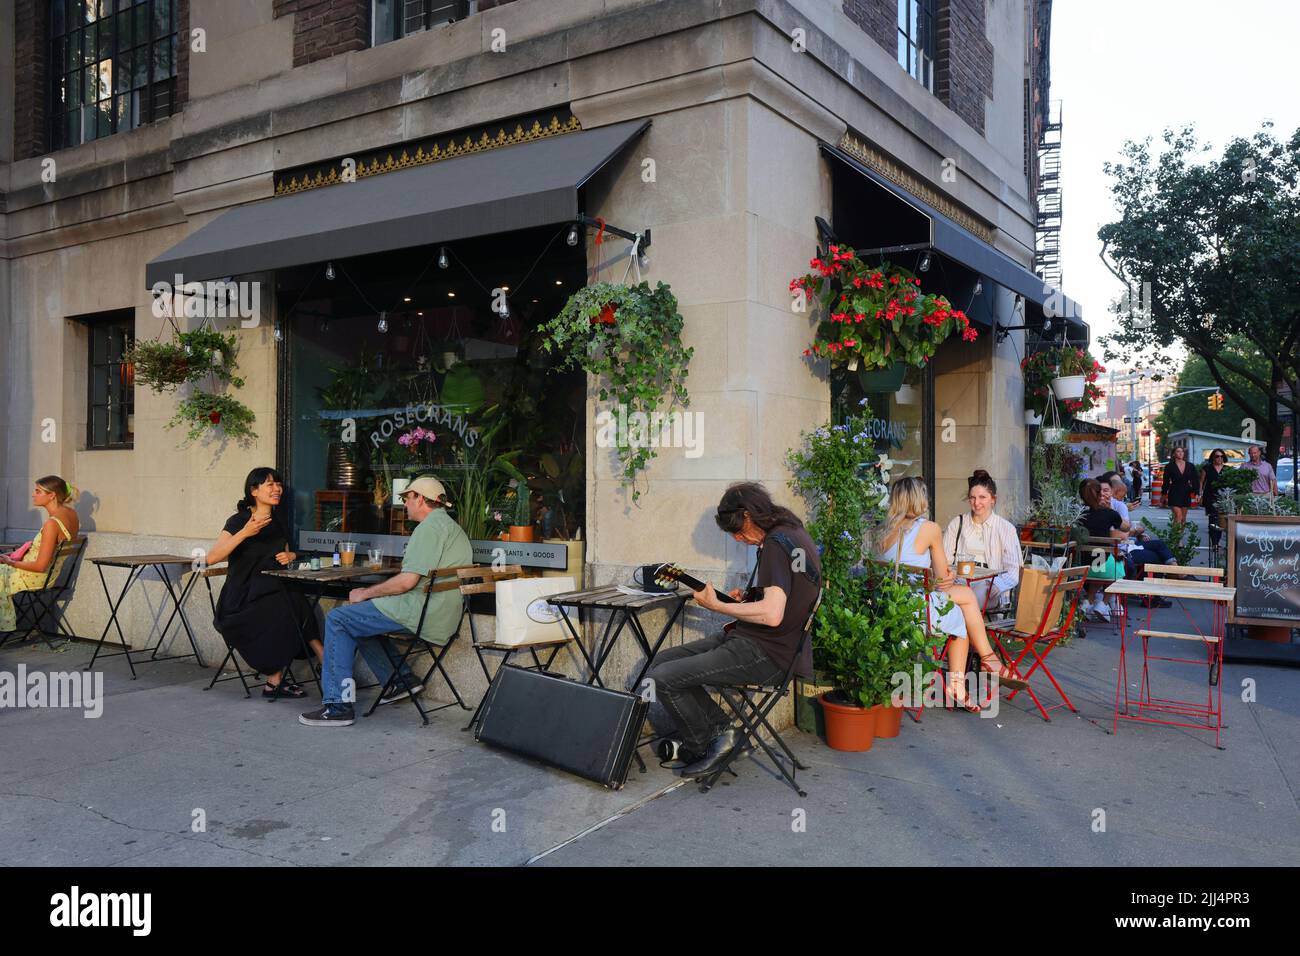 Rosecrans, 7 Greenwich Ave, New York, NYC Foto von einem Blumenladen und Café im Stadtteil Greenwich Village in Manhattan. Stockfoto